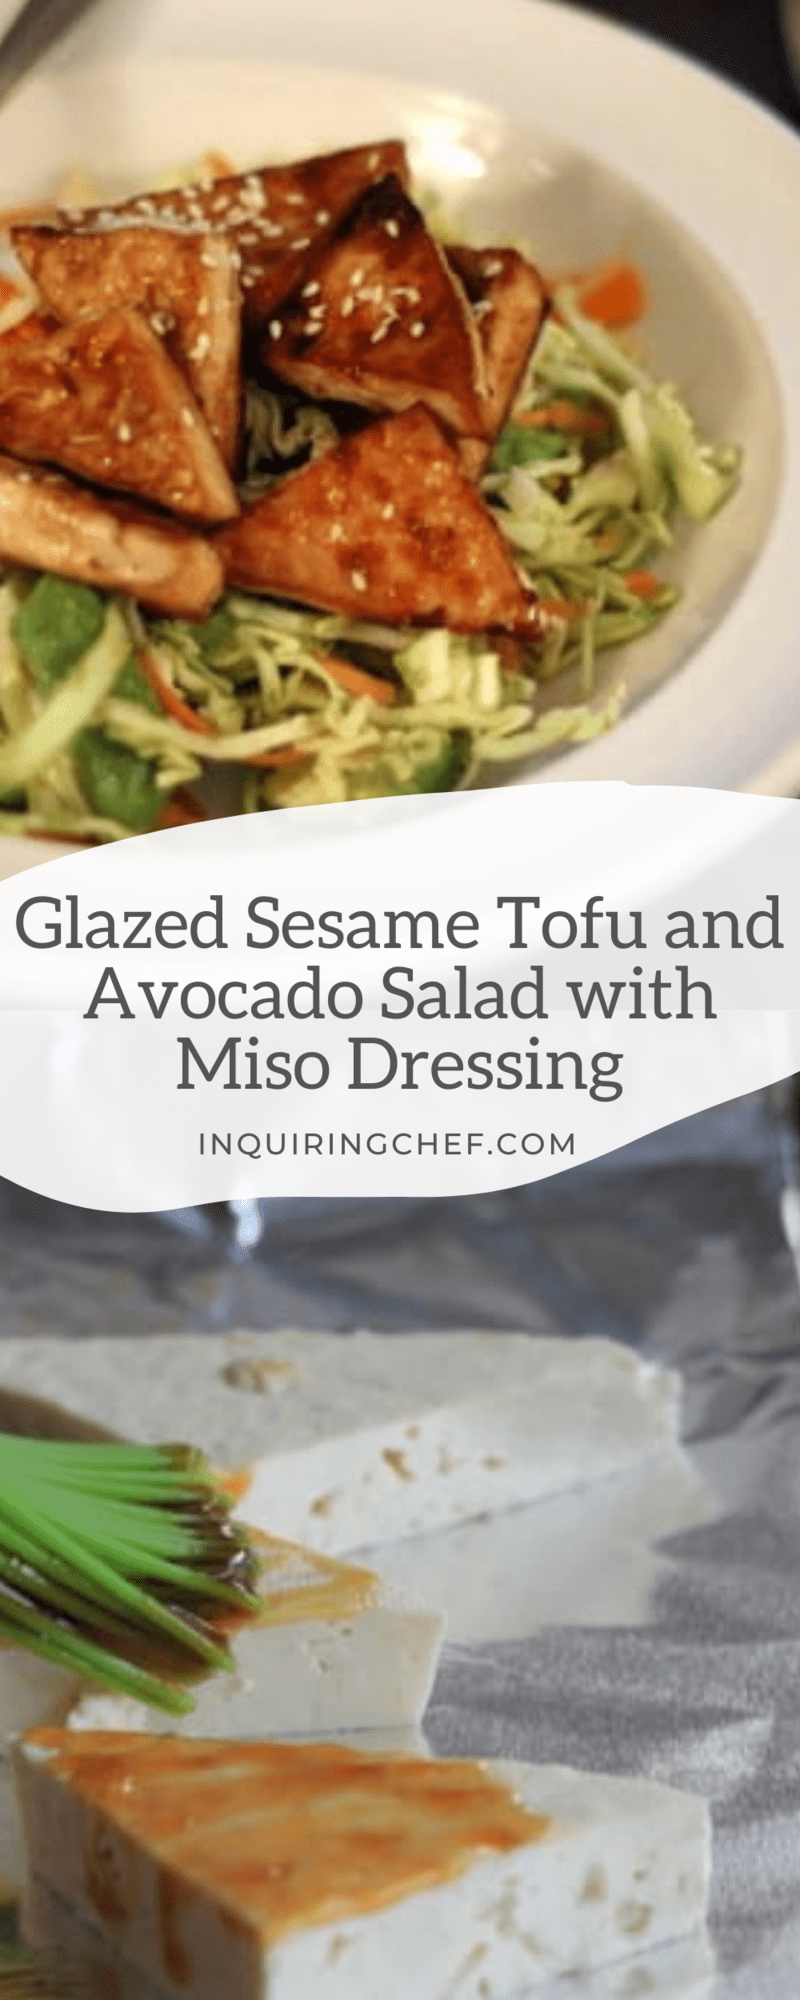 sesame tofu salad